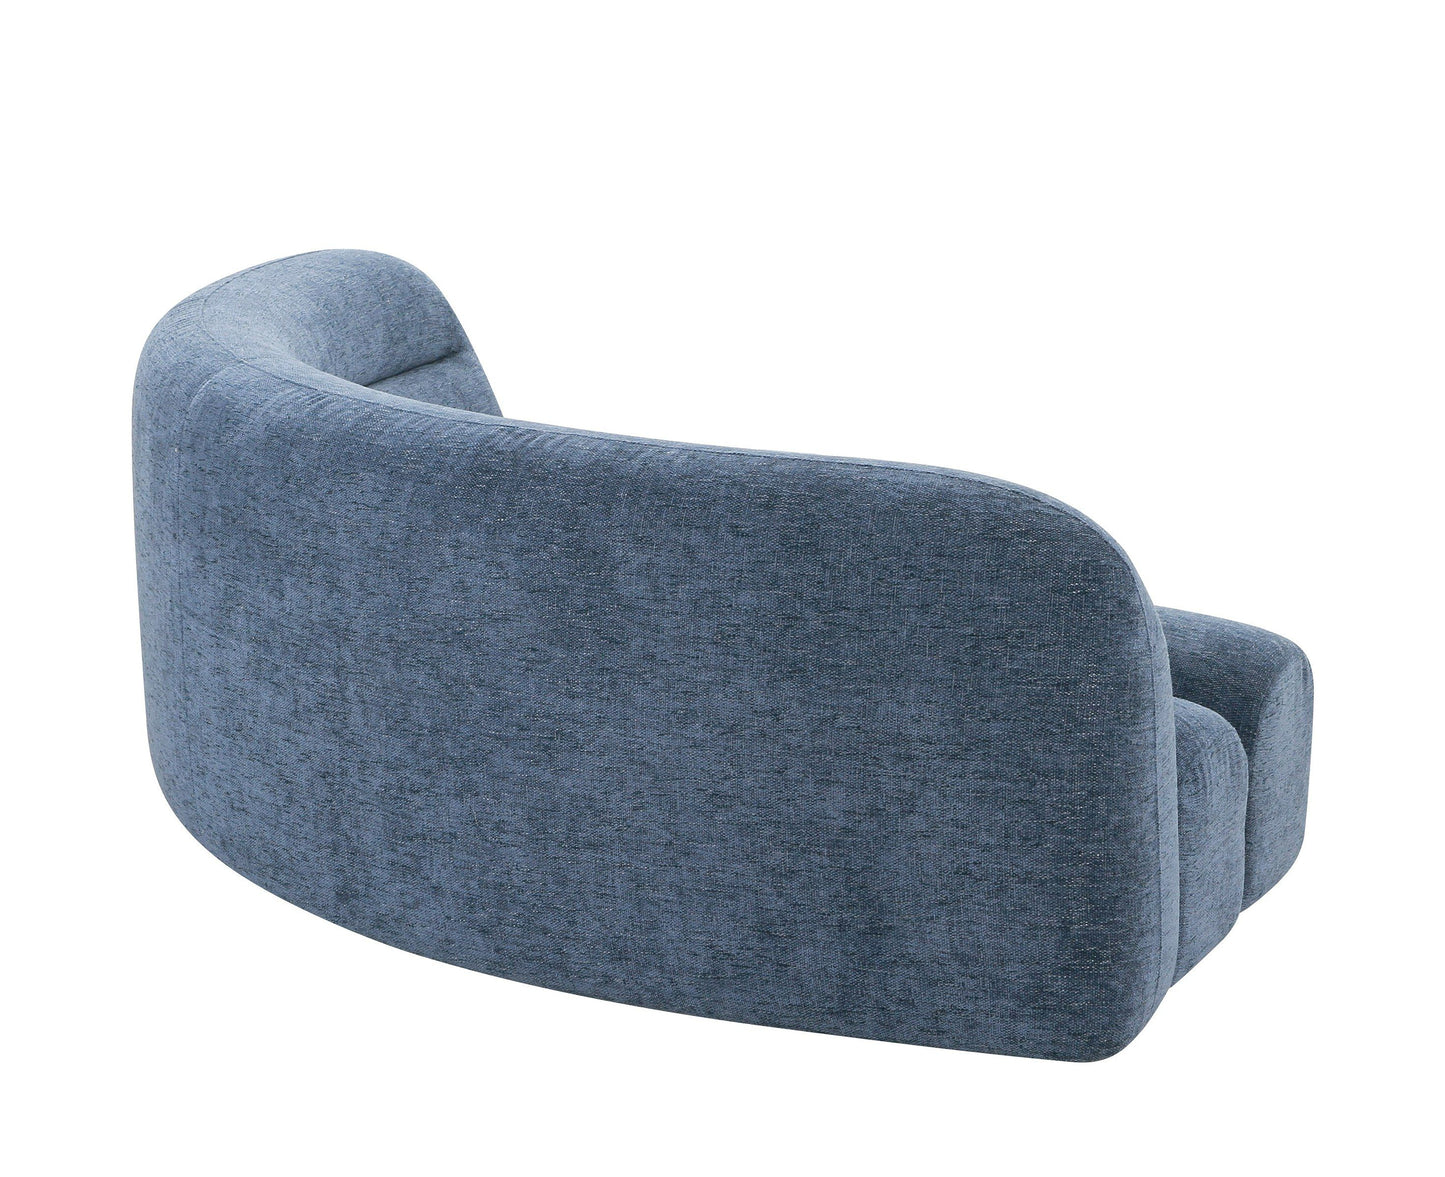 Divani Casa Forman - Modern Blue Fabric Modular Sectional Sofa